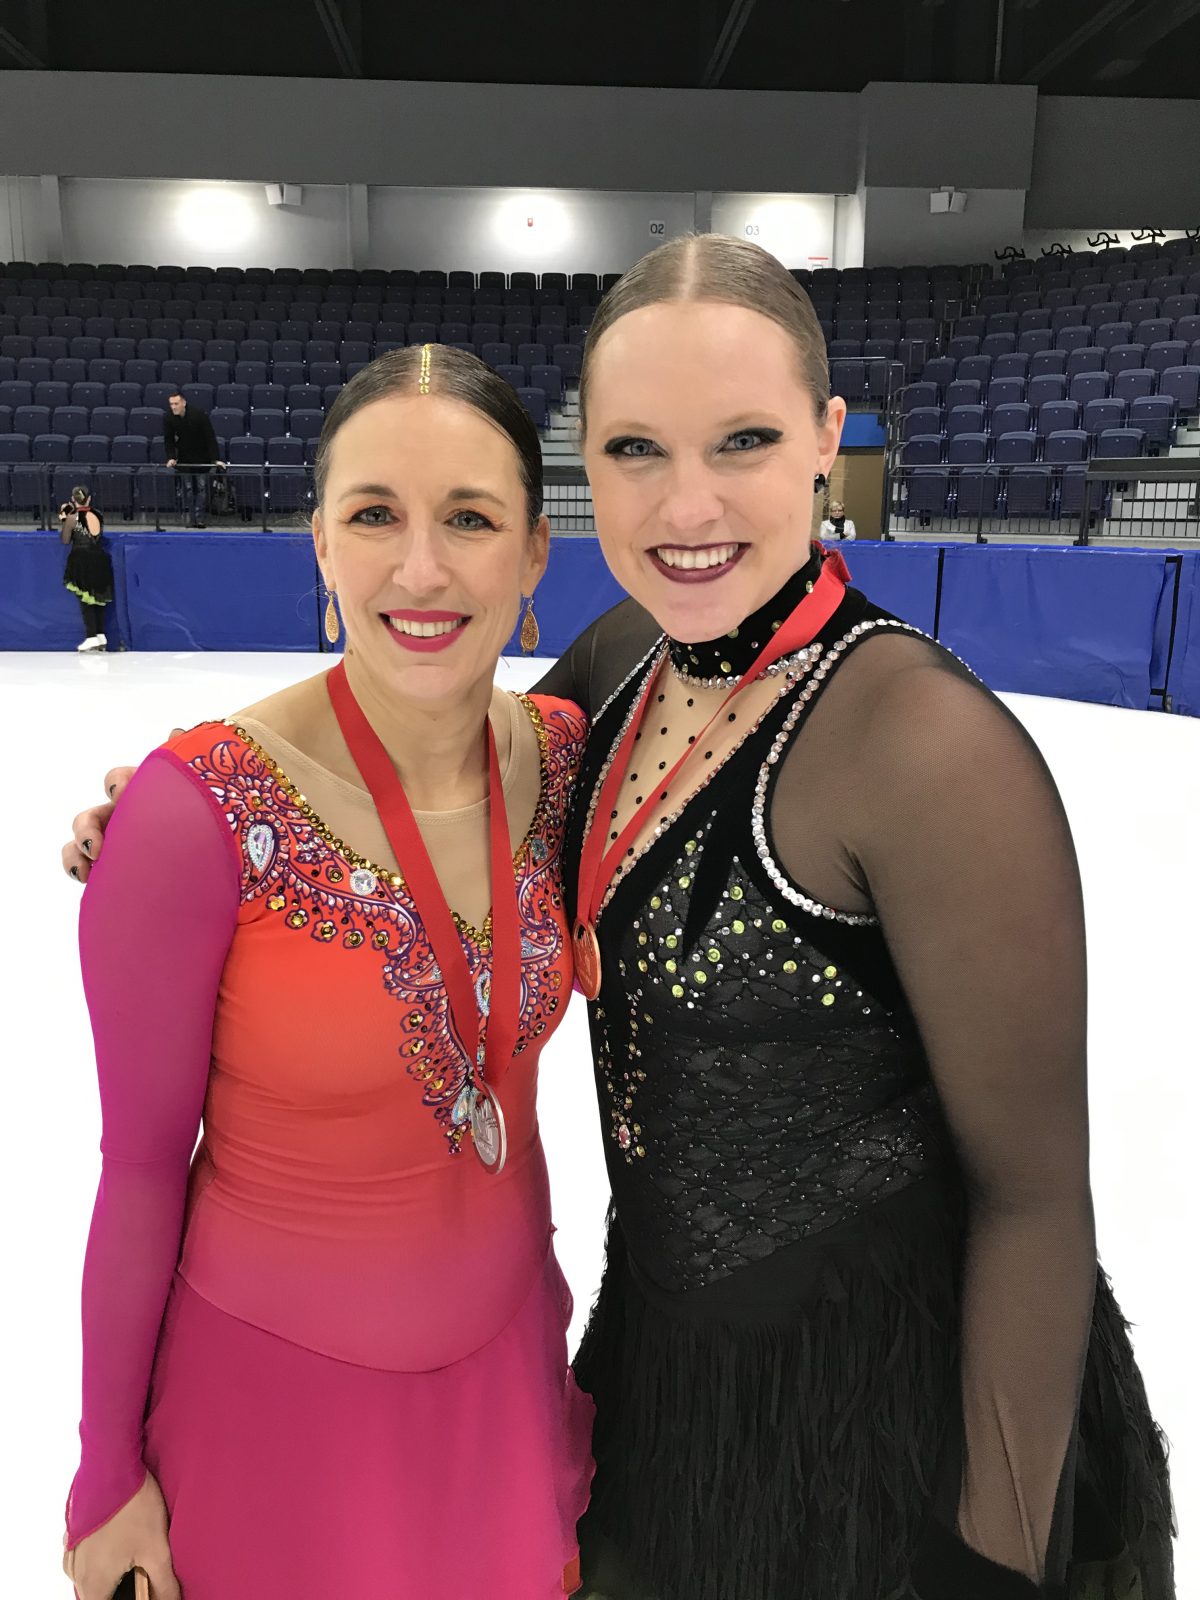 Deux enseignantes de l’école l’Arpège montent sur le podium aux Championnats provinciaux de patinage artistique synchronisé